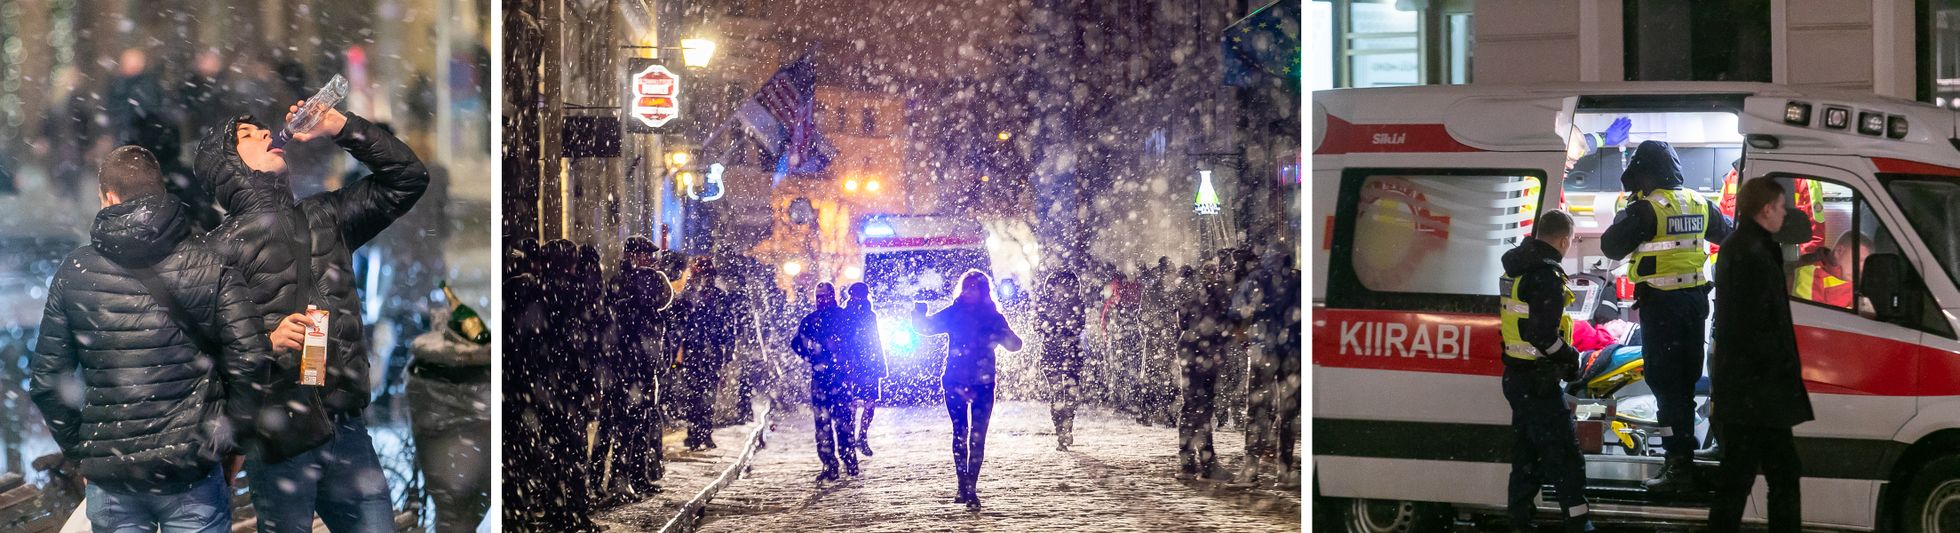 В новогоднюю ночь скорой помощи поступило более тысячи вызовов, в Таллинне работали и дополнительные бригады медиков.